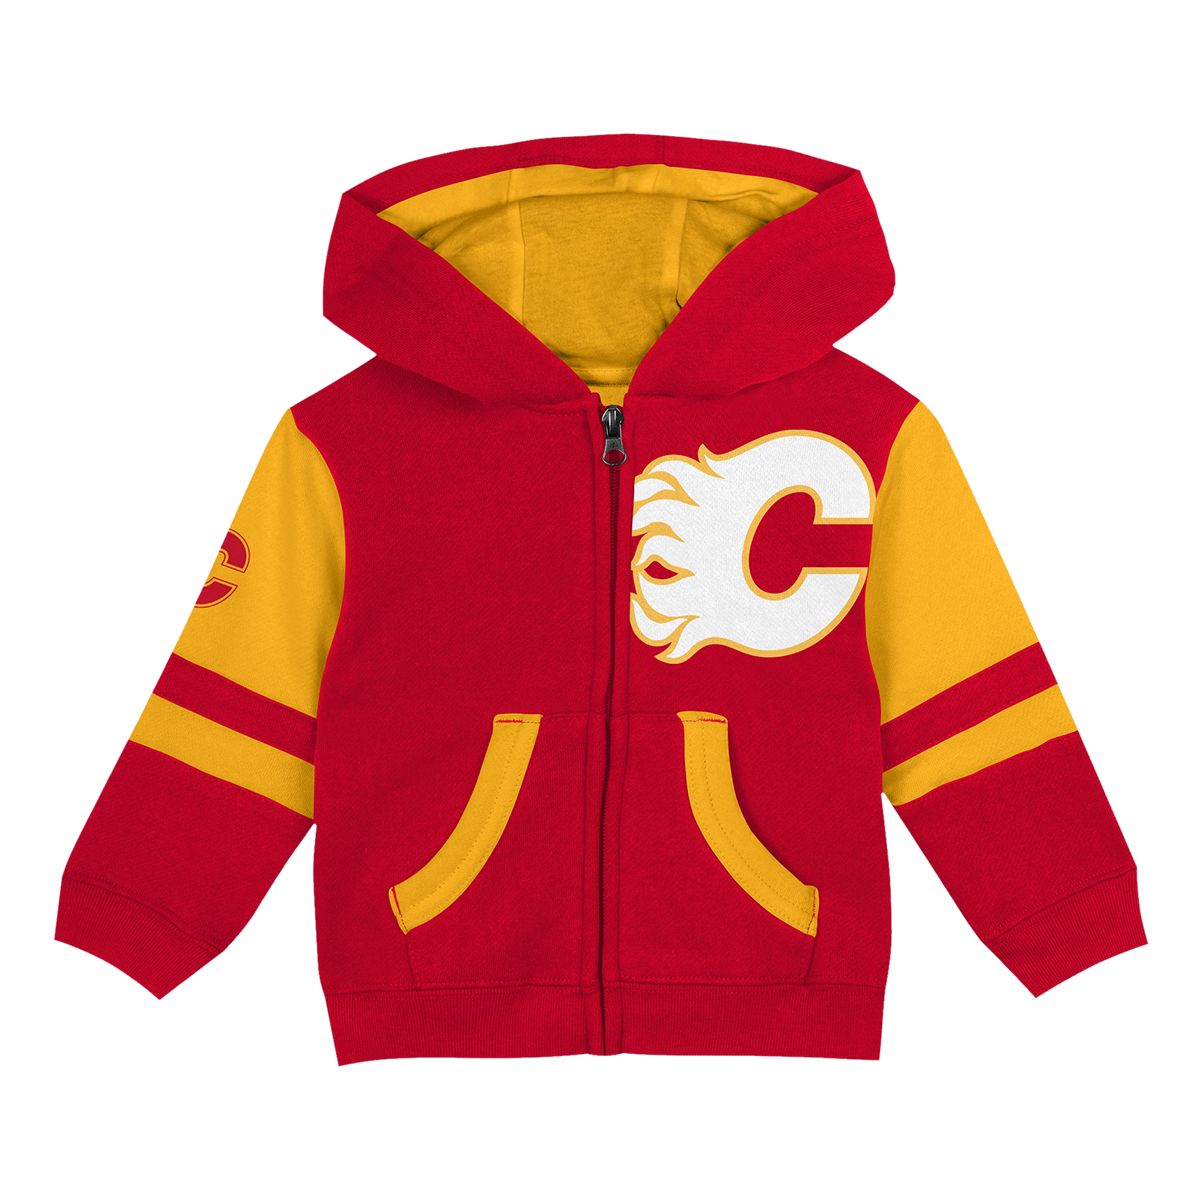 Vintage Calgary flames sweater/hoodie  Sweater hoodie, Calgary flames,  Hoodies men